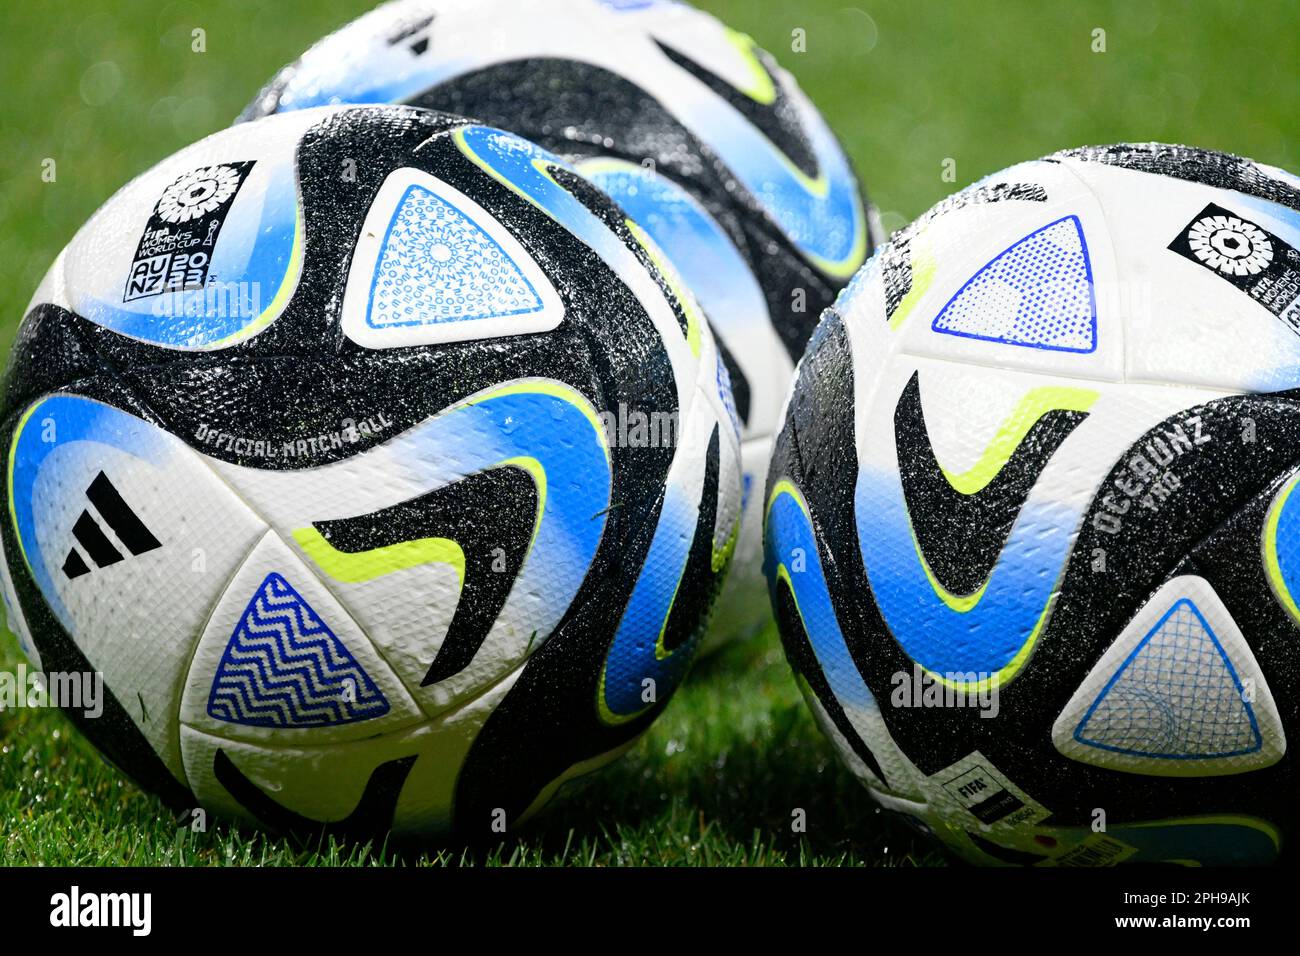 MEWA-Arena Mainz, Allemagne 25,4.2023, football: International friendly Match, Allemagne (GER) (blanc) vs PÉROU (PER) (rouge) - Adidas OCEAUNZ, ballon de match officiel de la coupe du monde des femmes de la FIFA 2023 en Nouvelle Zélande et en Australie Banque D'Images